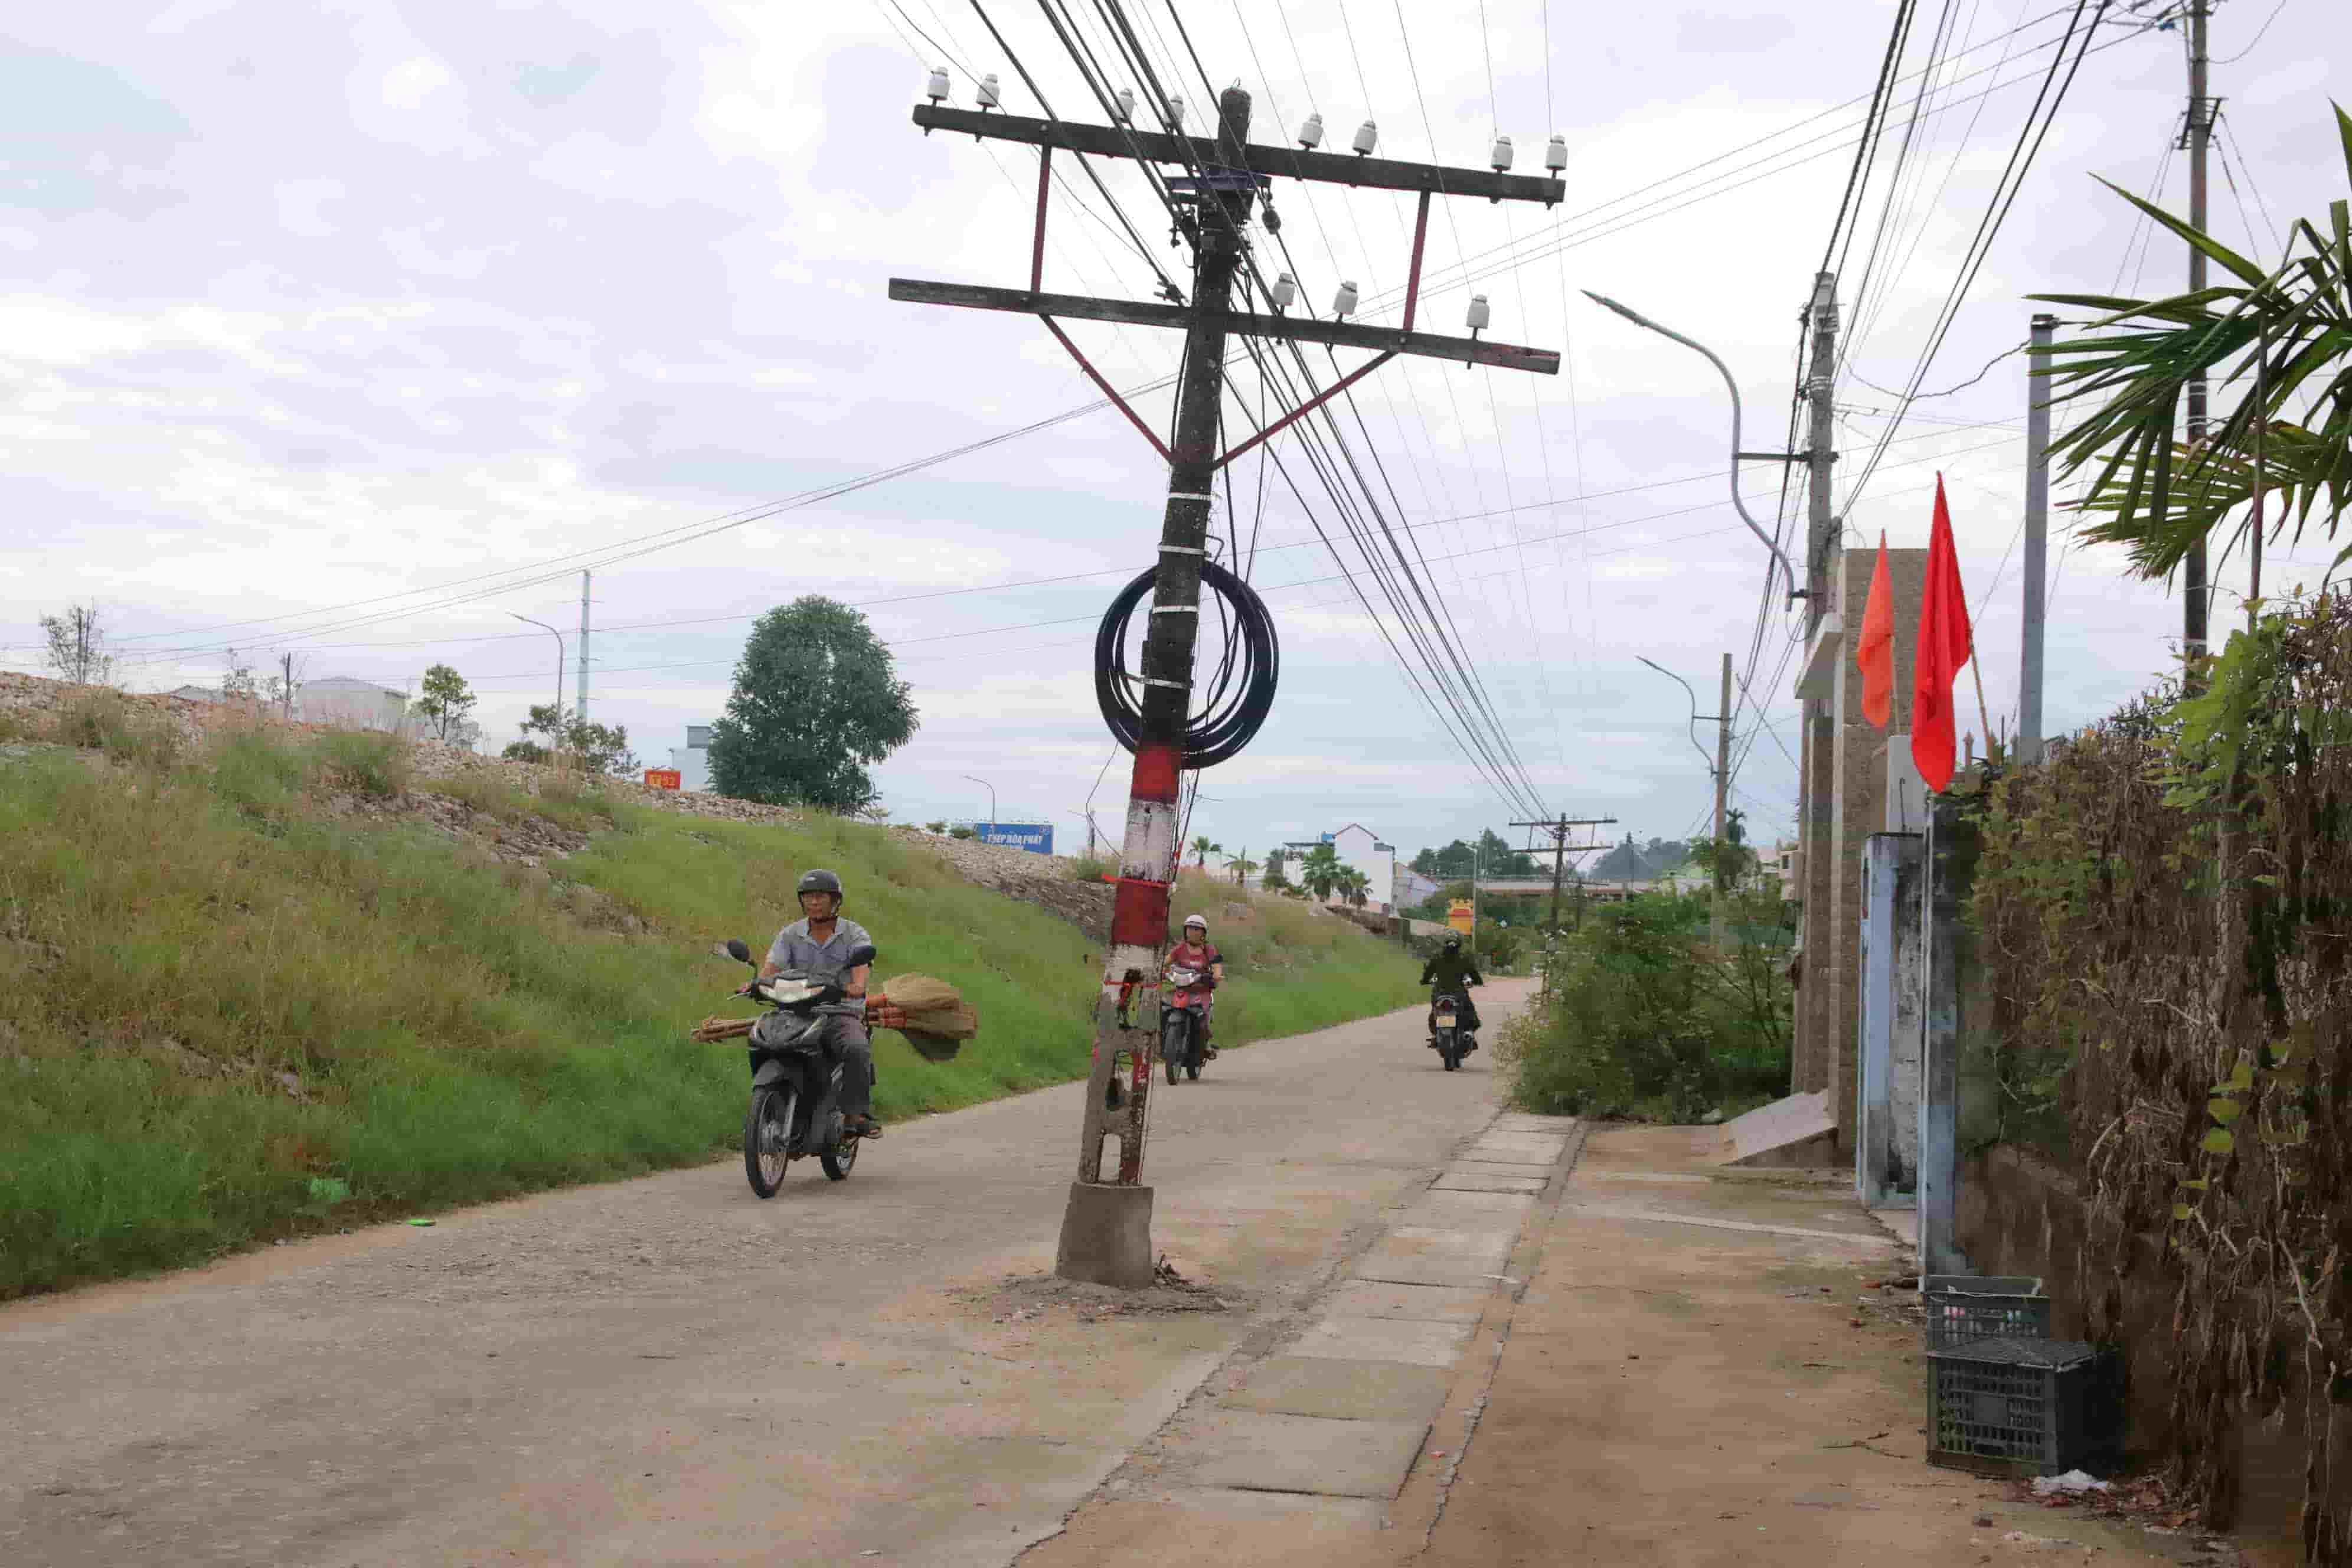 Dọc theo tuyến đường song song với đường sắt khu vực các phường Thủy Dương và phường An Cựu không khó để bắt gặp những chiếc cột điện nằm gần giữa đường đi như thế này. 